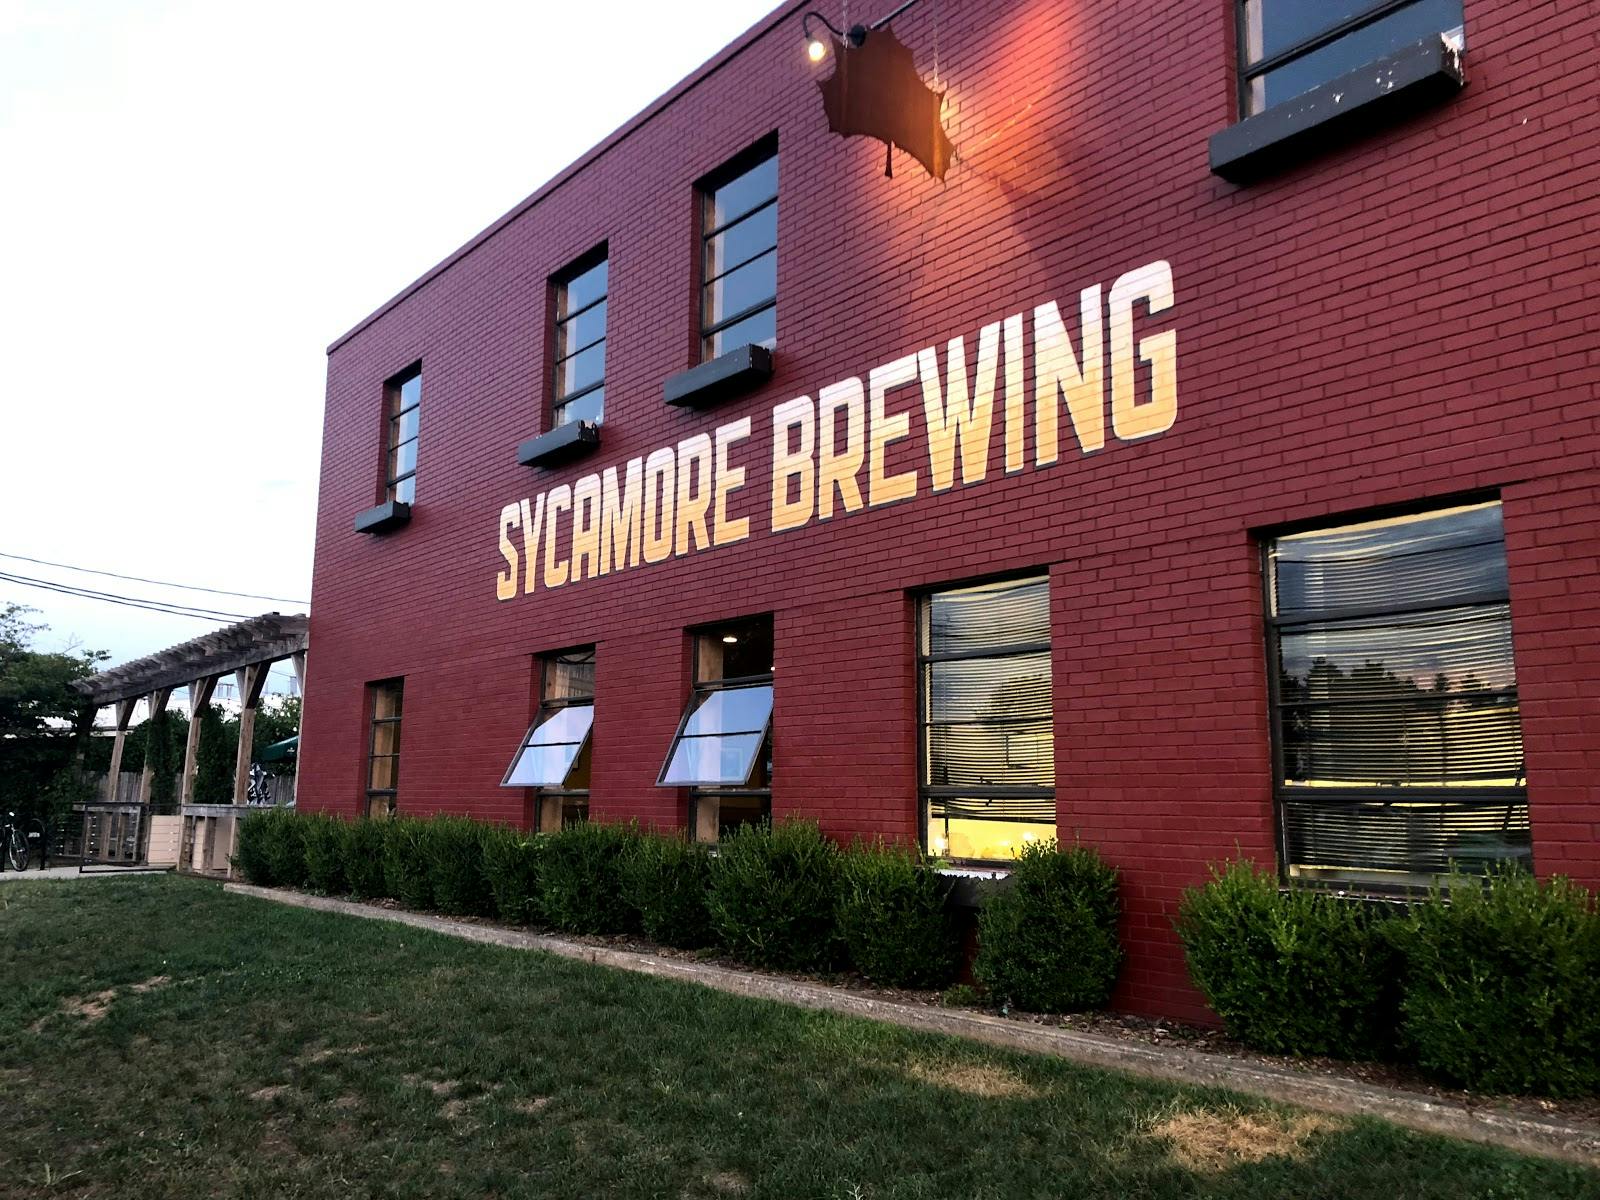 Image - Sycamore Brewing - Beer Garden